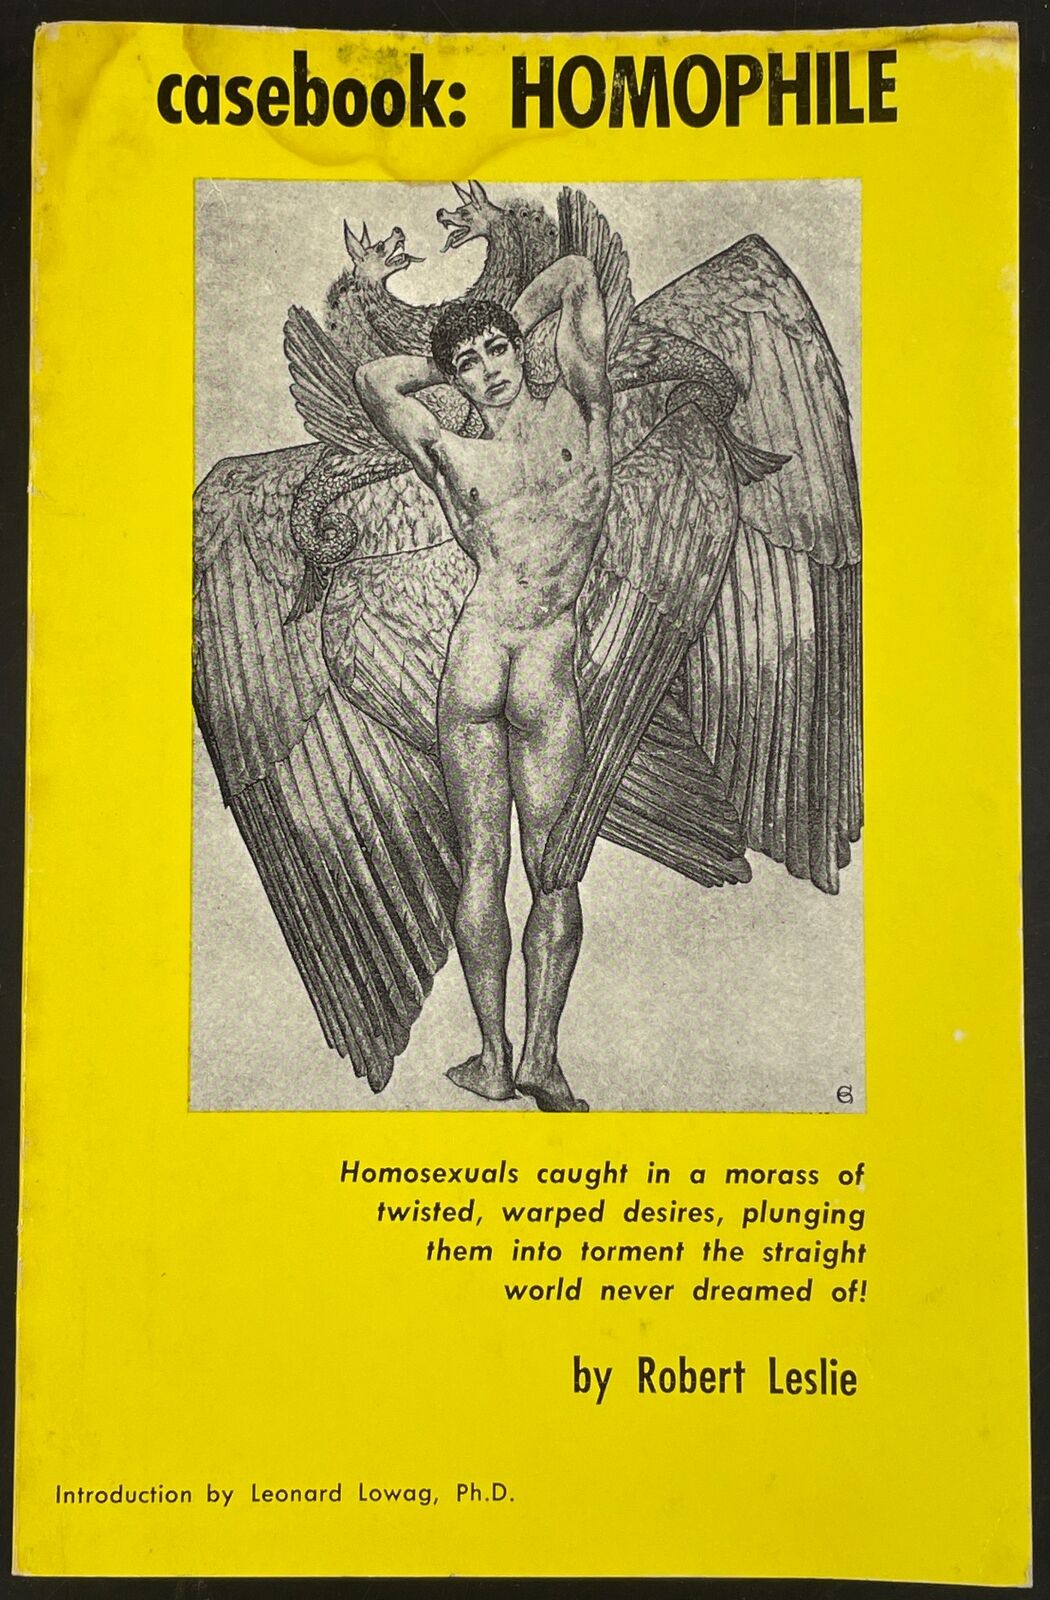 casebook: Homophile by Robert Leslie Leonard Lowag, Ph.D. 1966 homosexual edusex